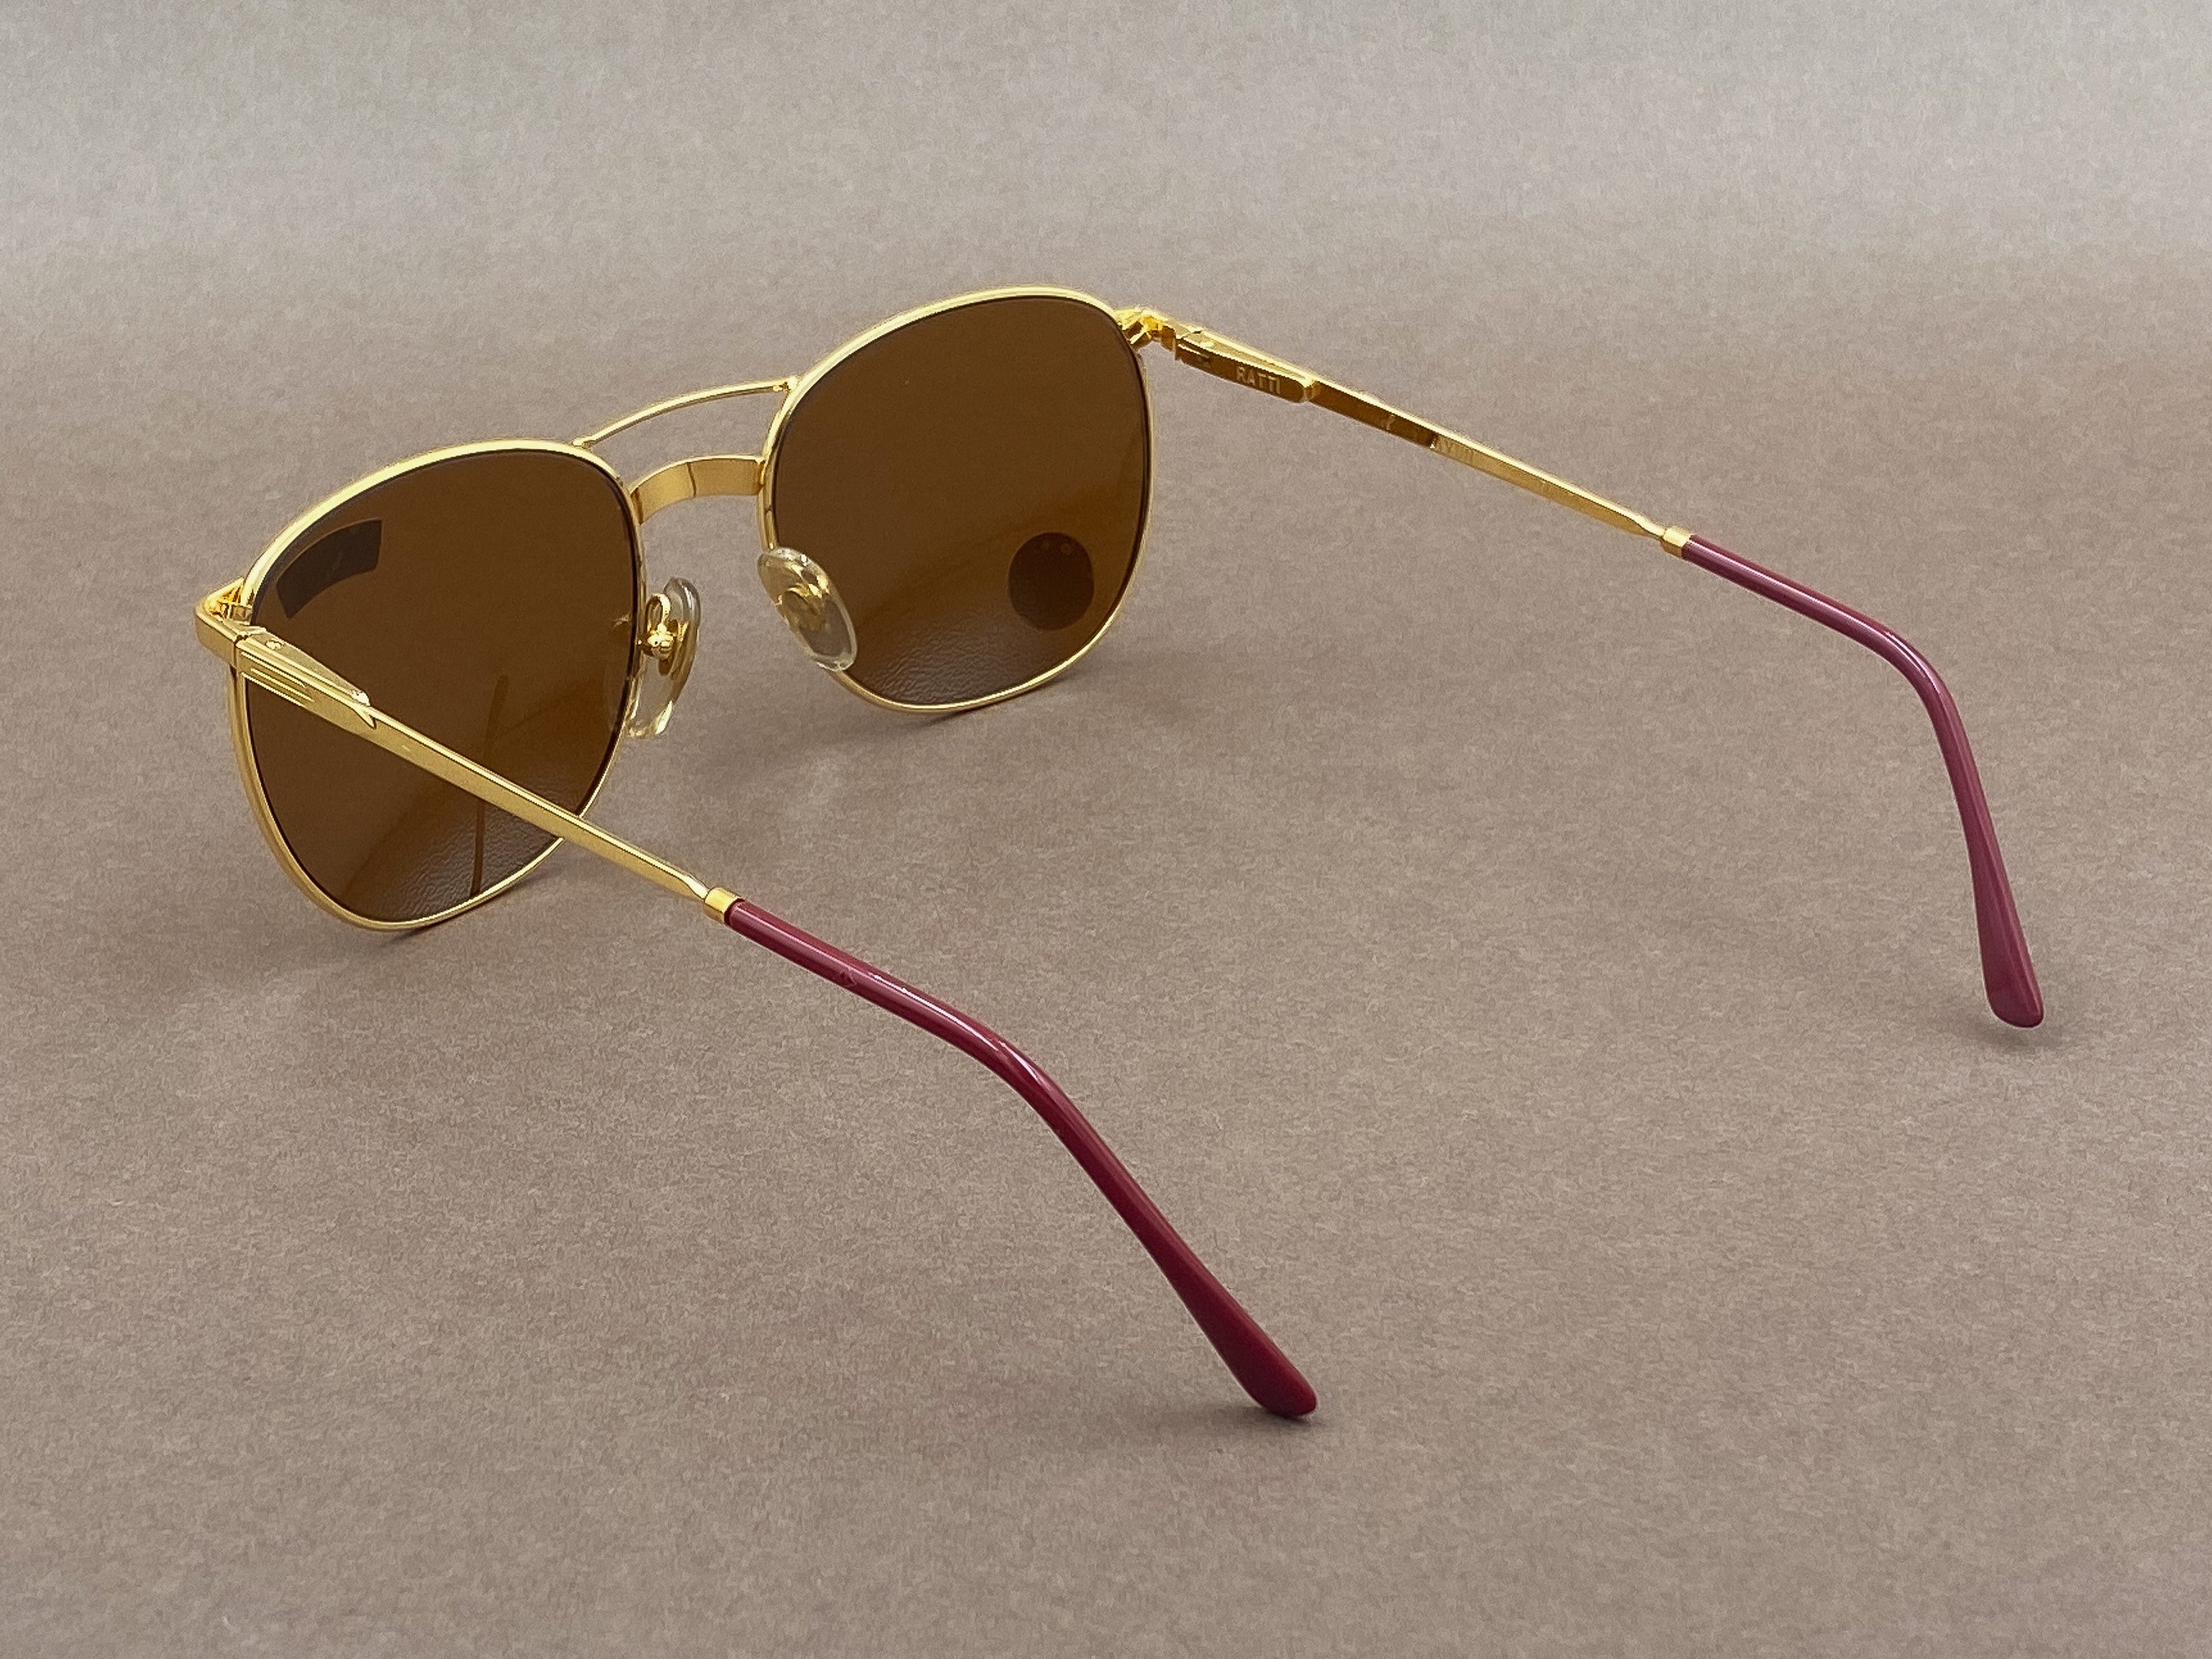 Persol Ratti Avon sunglasses